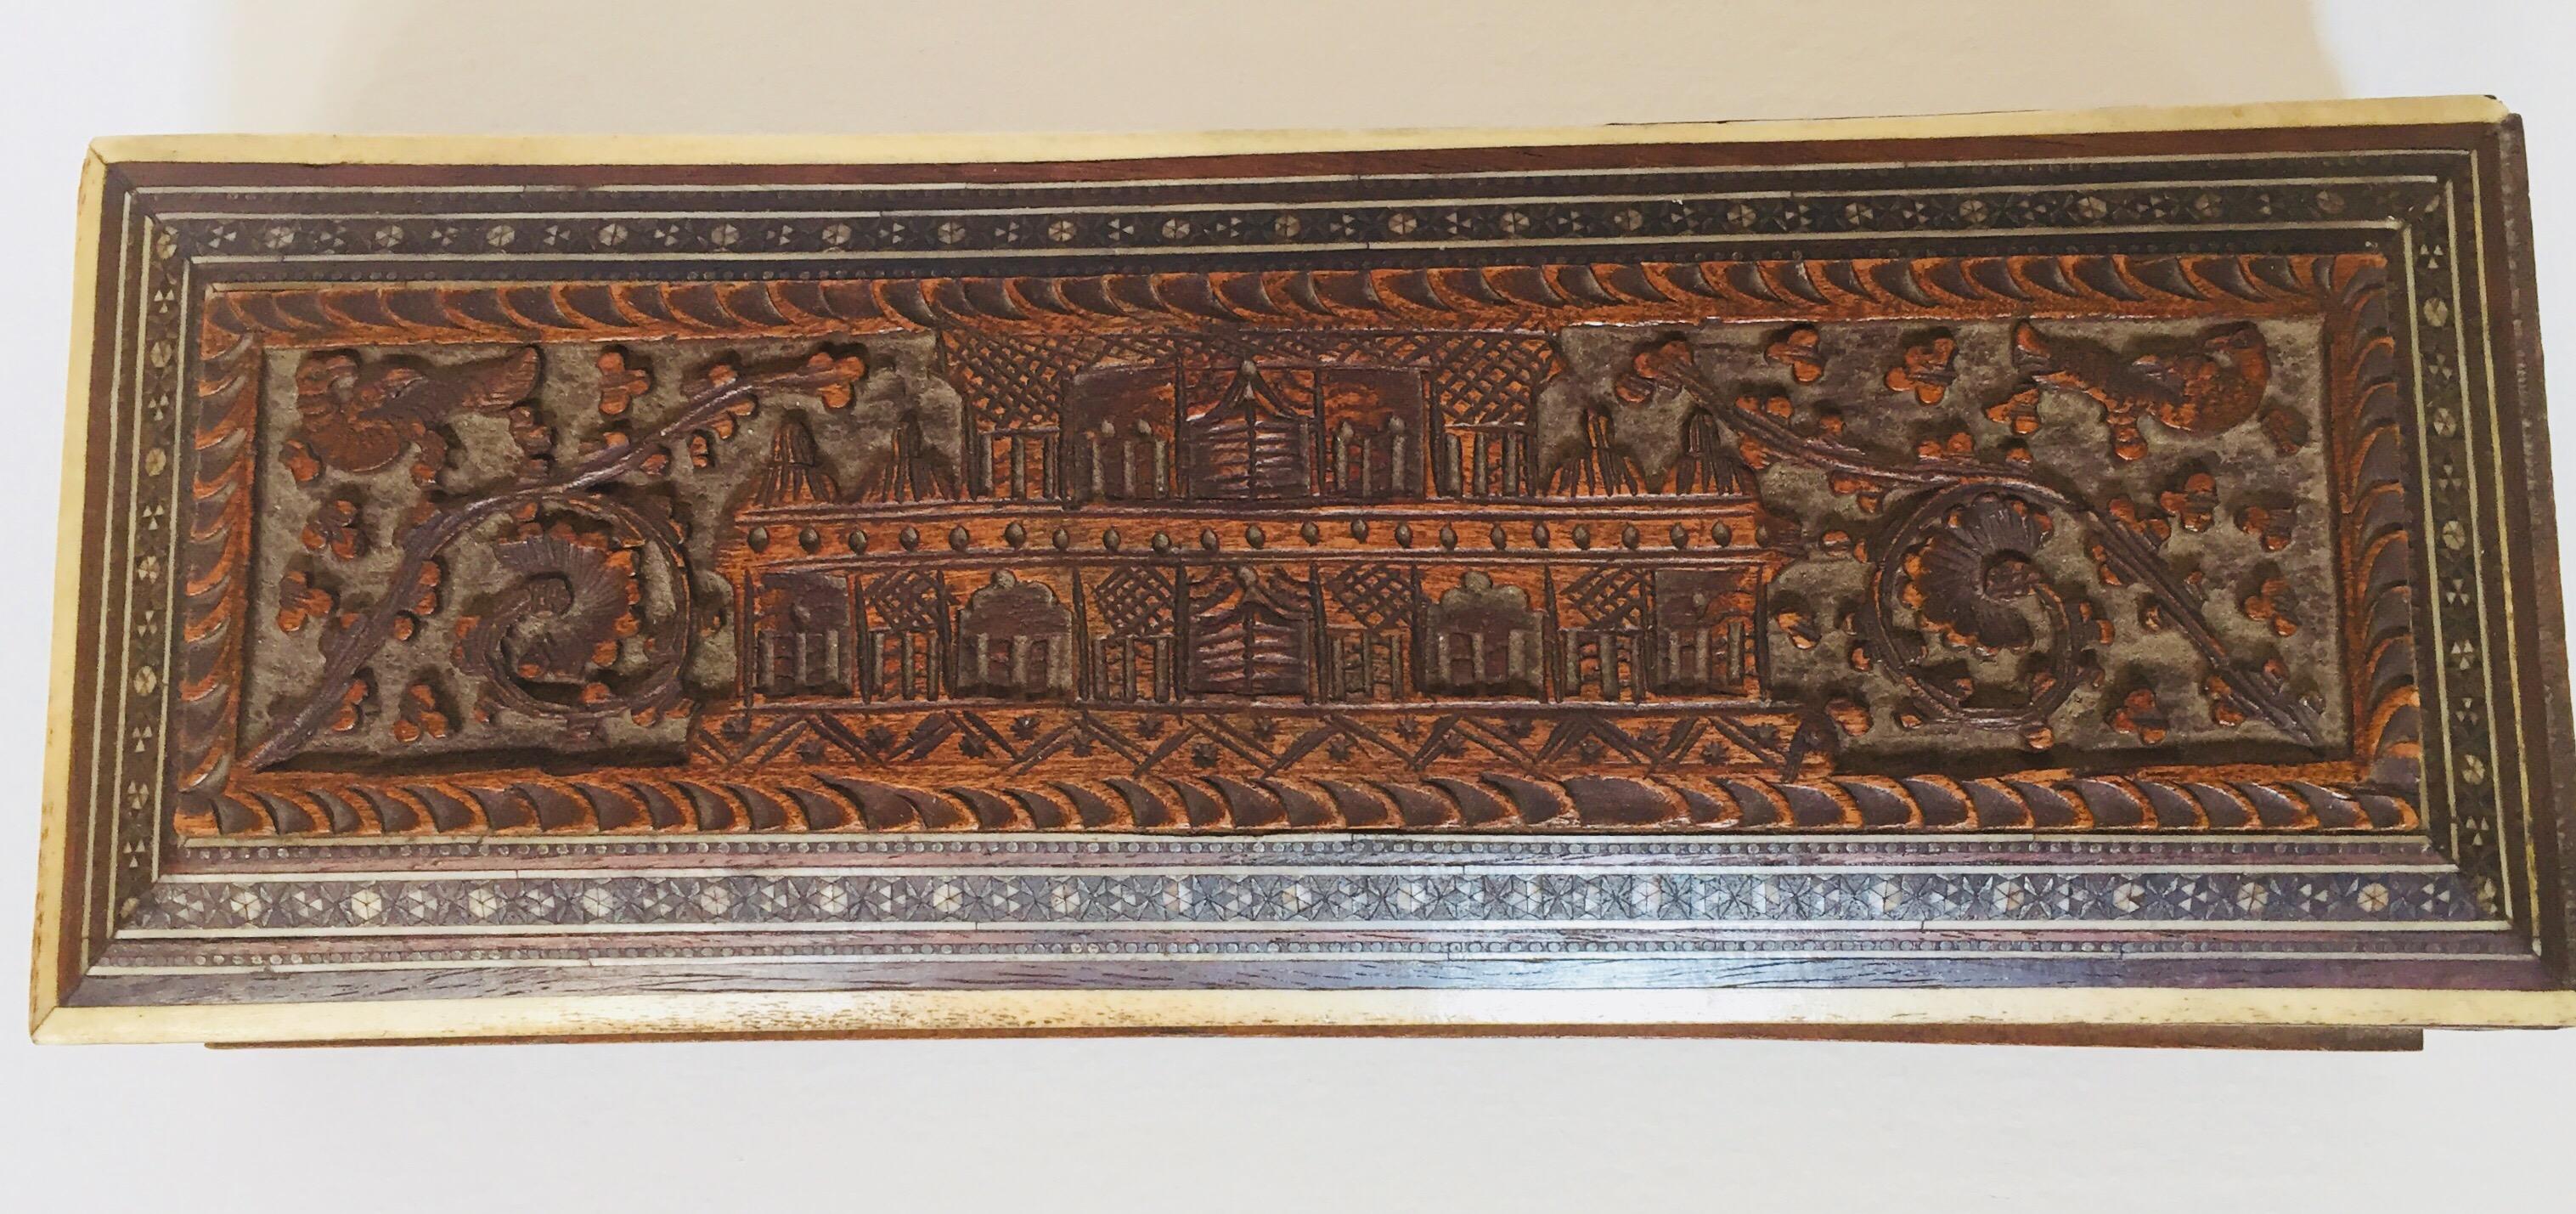 Feine antike anglo-indische handgeschnitzte hölzerne Schmuckschatulle mit Intarsien.
Hübsche indische Mughal-Stiftbox, handgefertigt aus feinstem Sadeli-Mikro-Mosaik und einem architektonischen Mughal-Palast-Motiv, das aufwändig auf der Oberseite